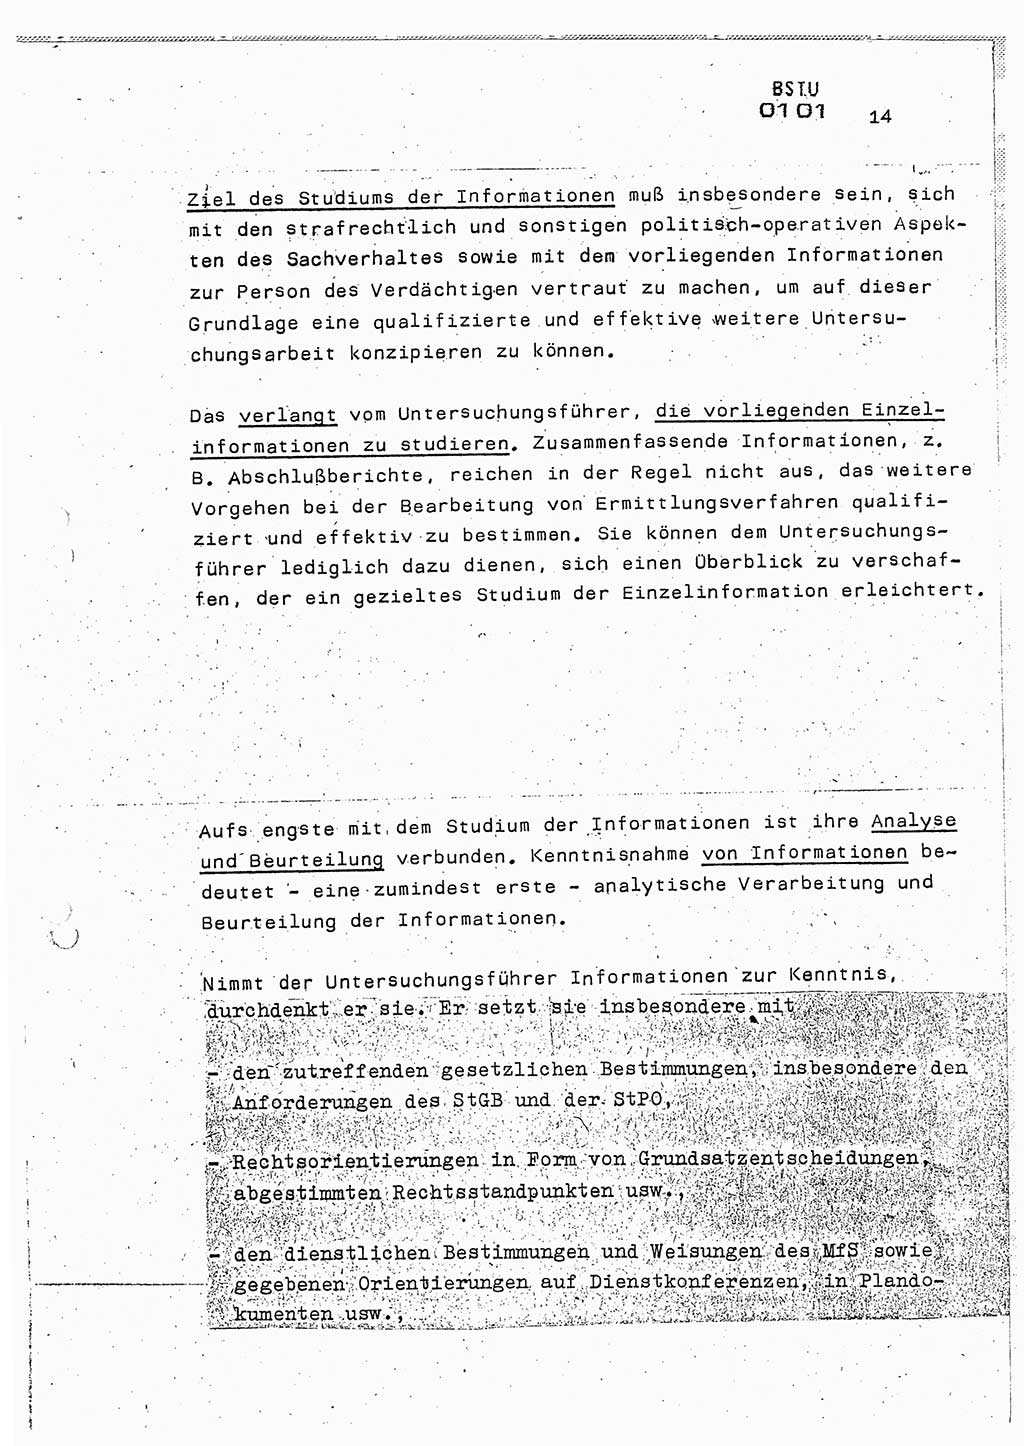 Lektion Ministerium für Staatssicherheit (MfS) [Deutsche Demokratische Republik (DDR)], Hauptabteilung (HA) Ⅸ, Berlin 1987, Seite 14 (Lekt. Pln. Bearb. EV MfS DDR HA Ⅸ /87 1987, S. 14)